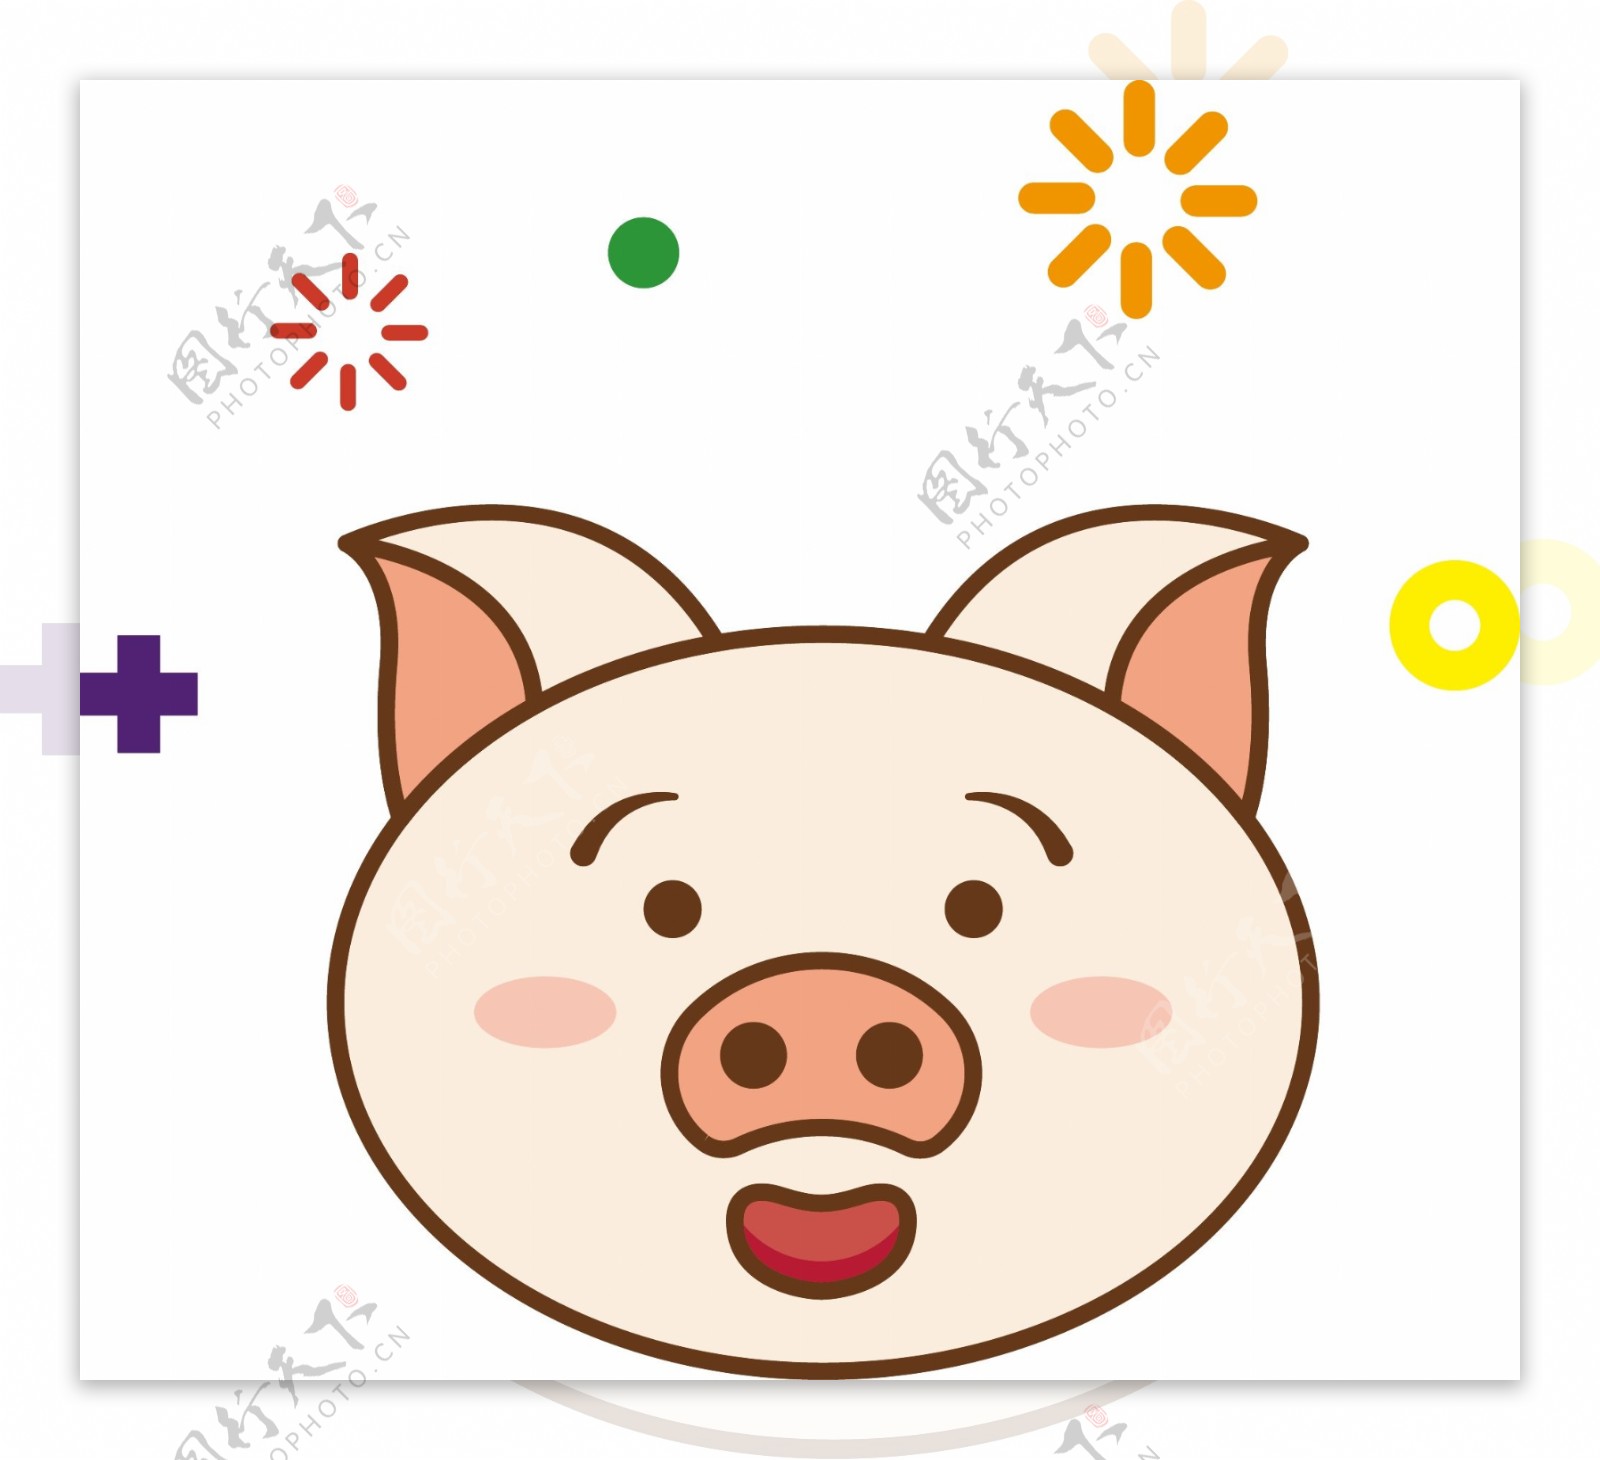 猪开心表情包mbe卡通可爱可商业元素